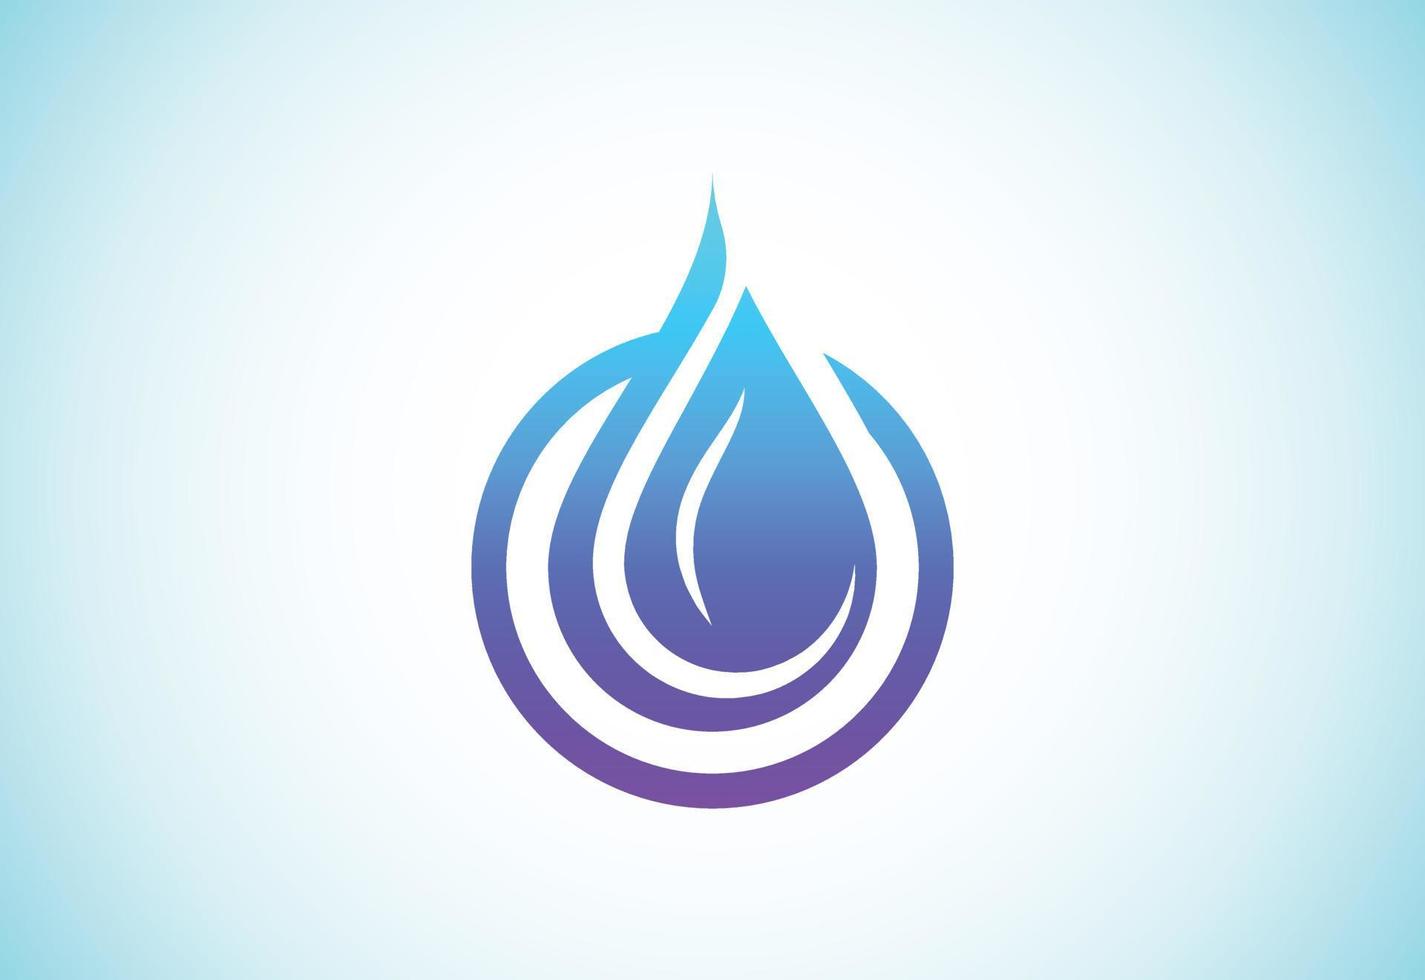 simbolo astratto del segno del logo della goccia d'acqua su sfondo bianco, modello di progettazione del logo della goccia d'acqua. vettore